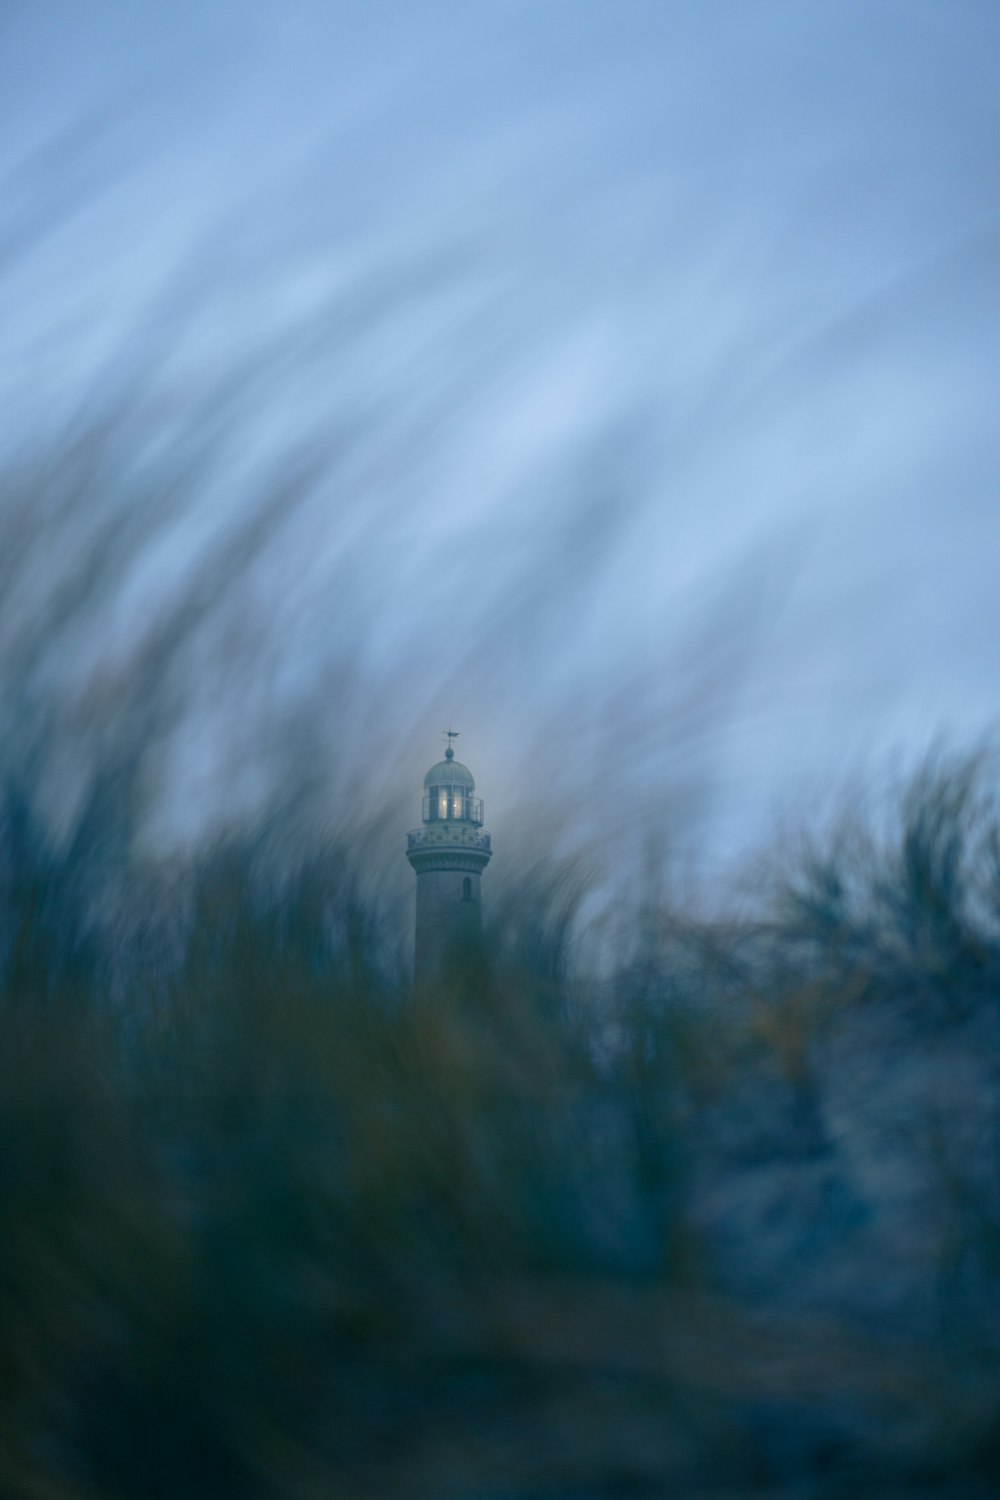 Una foto borrosa de una torre del reloj en la distancia